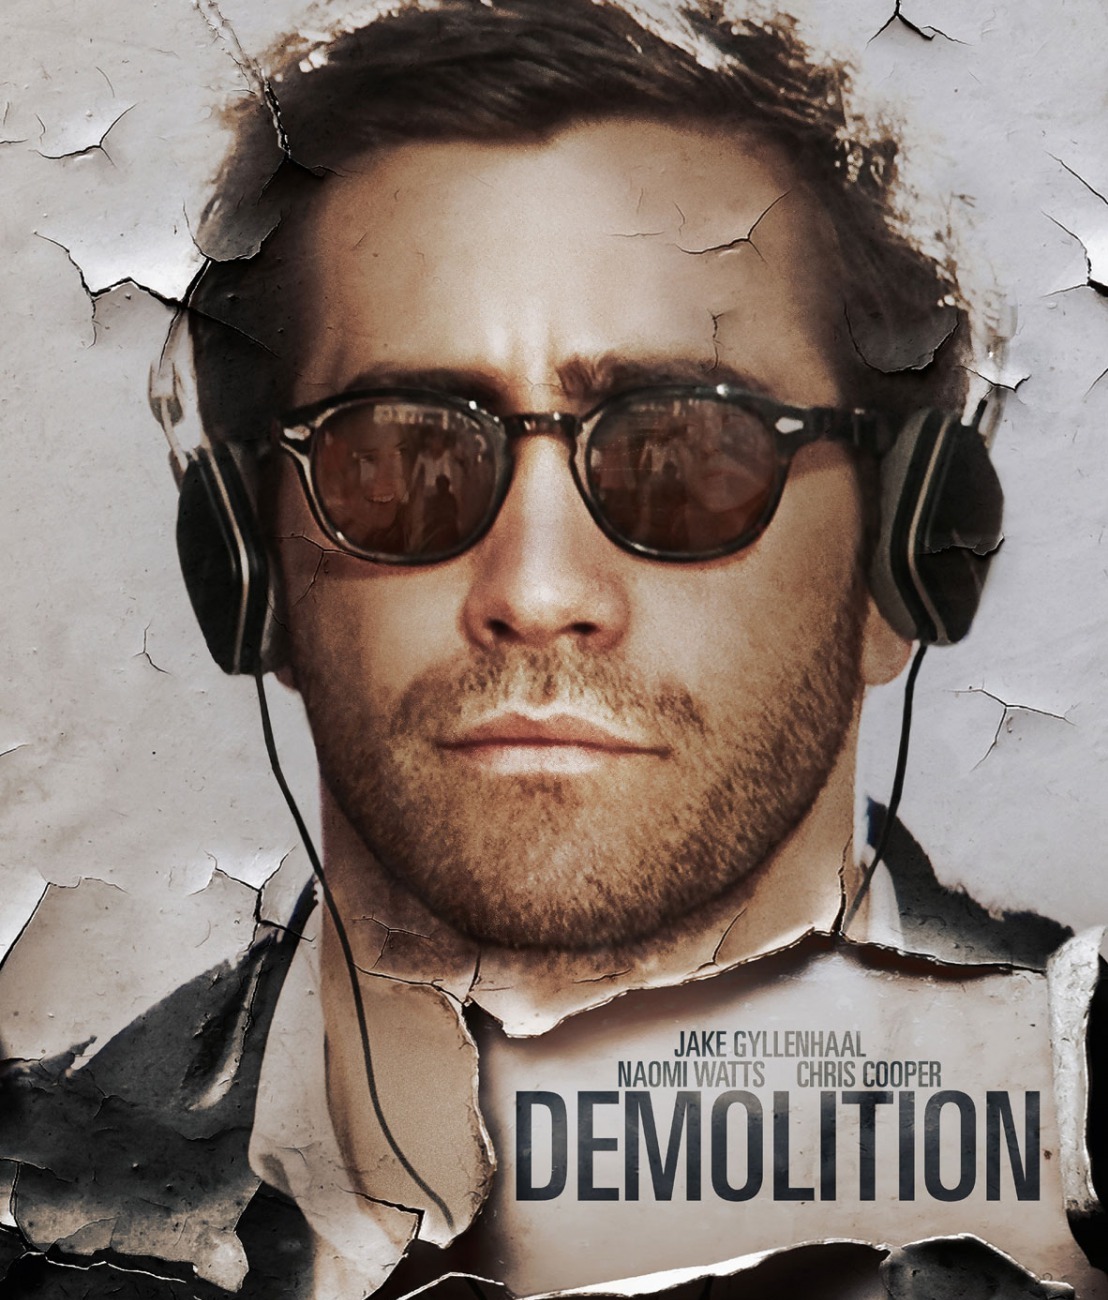 Demolition (2015)